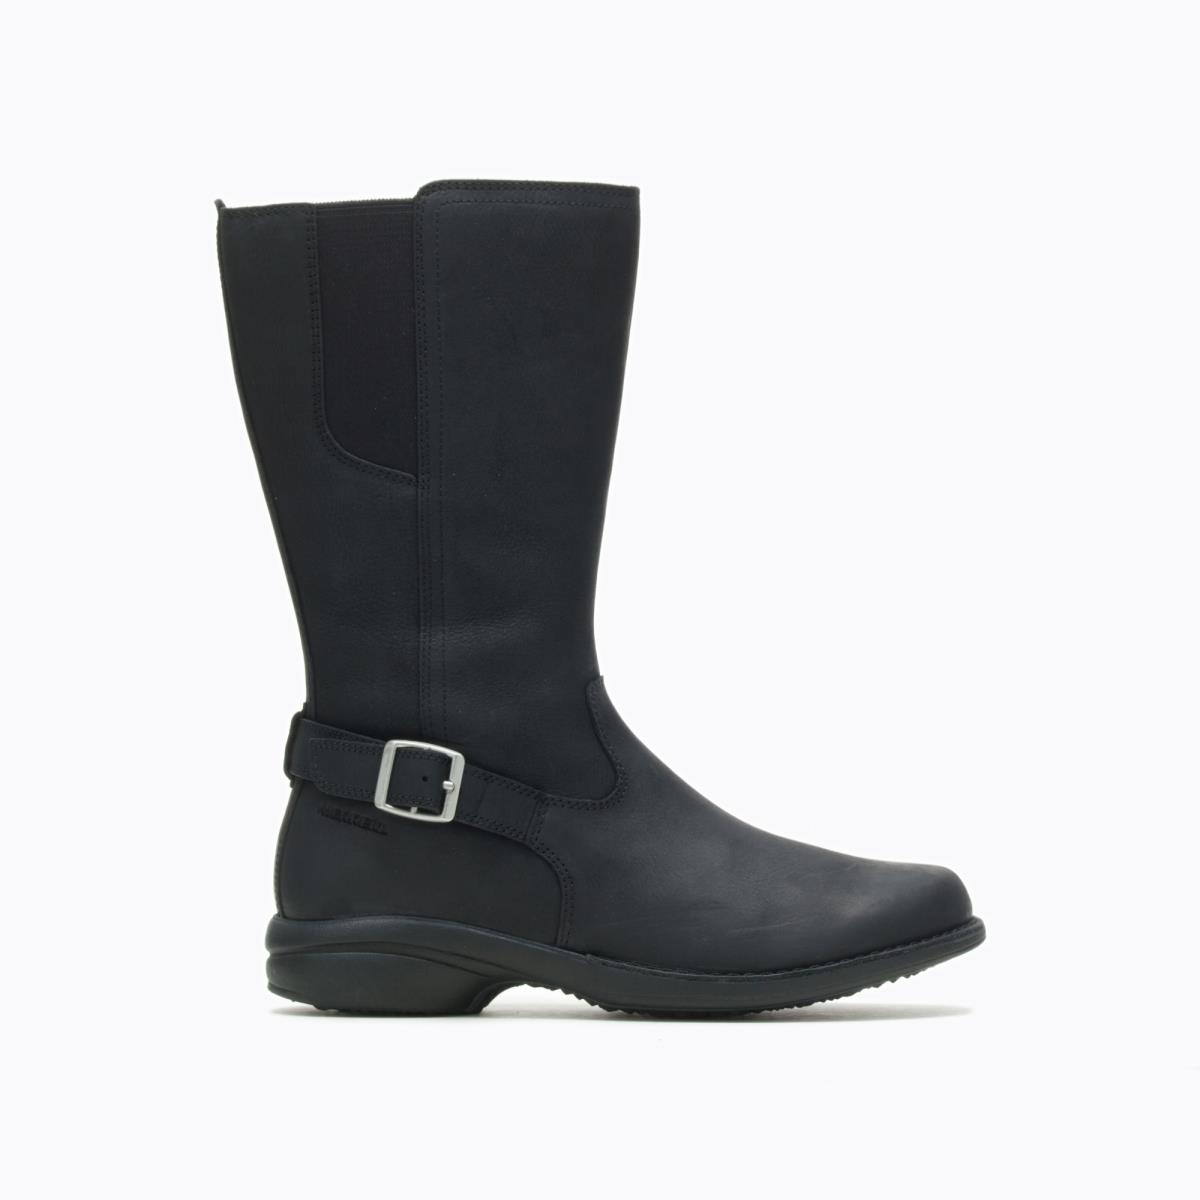 Merrell Women Andover Peak Waterproof Boots Leather Black